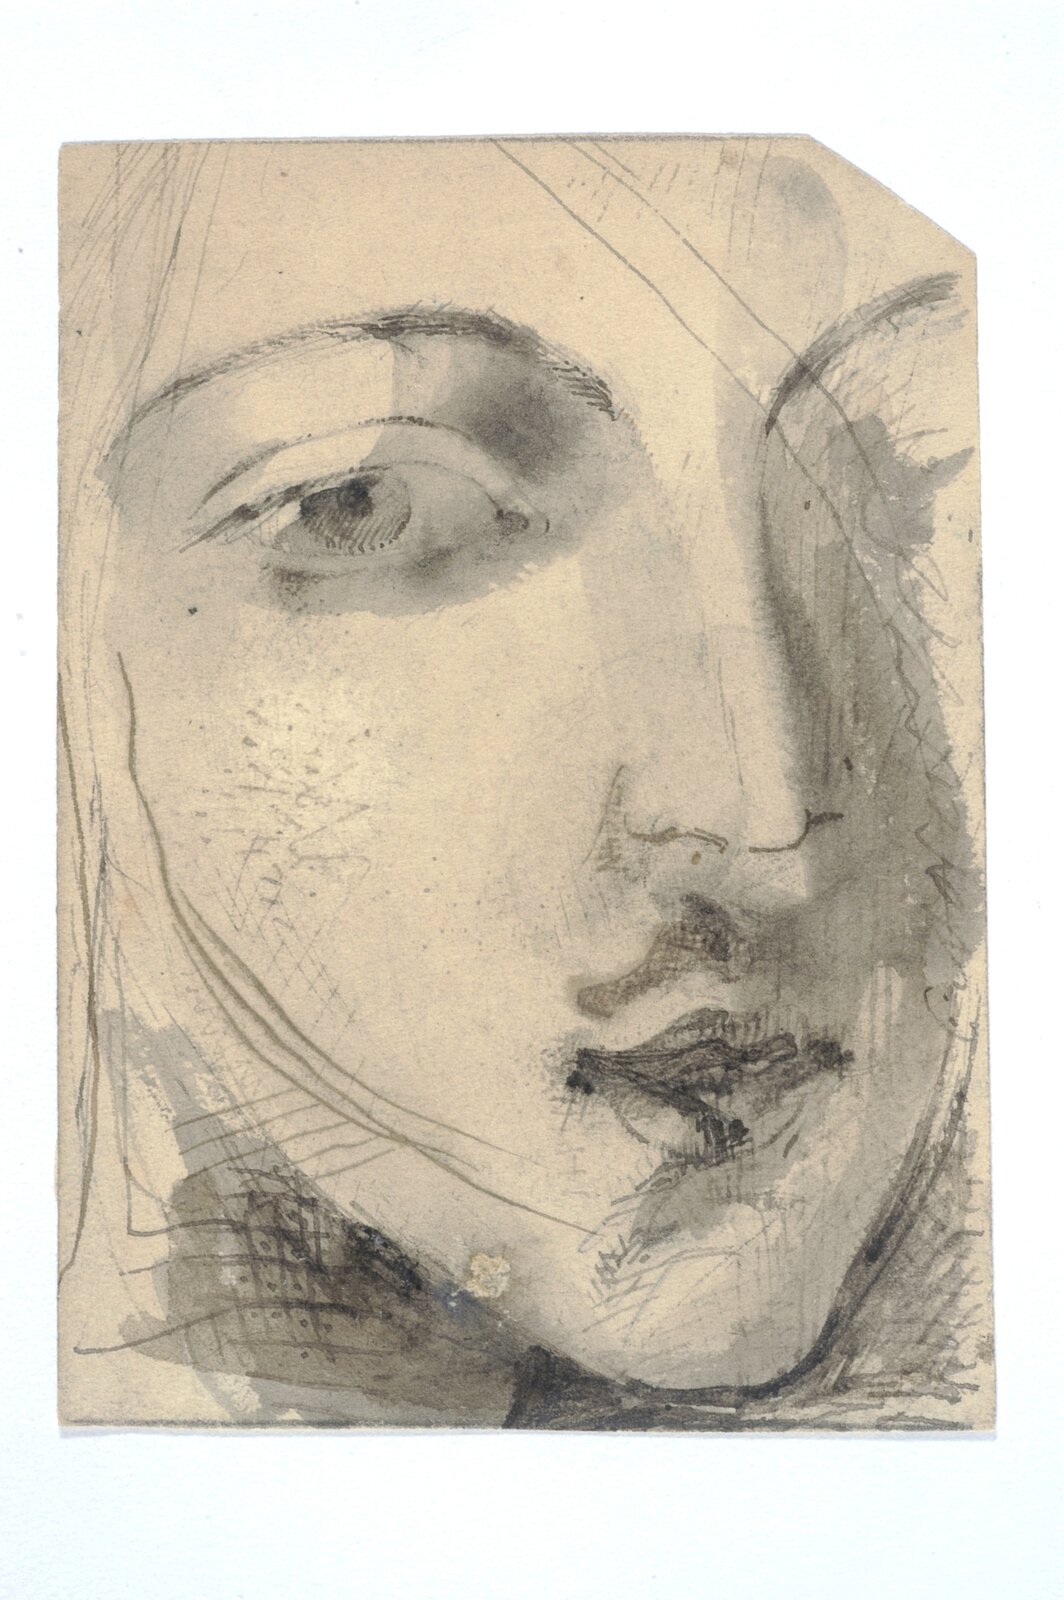 Obraz przedstawia fragment kobiecej twarzy. To twarz młodej kobiety. Widać wyraźnie zarysowane oko i nos.